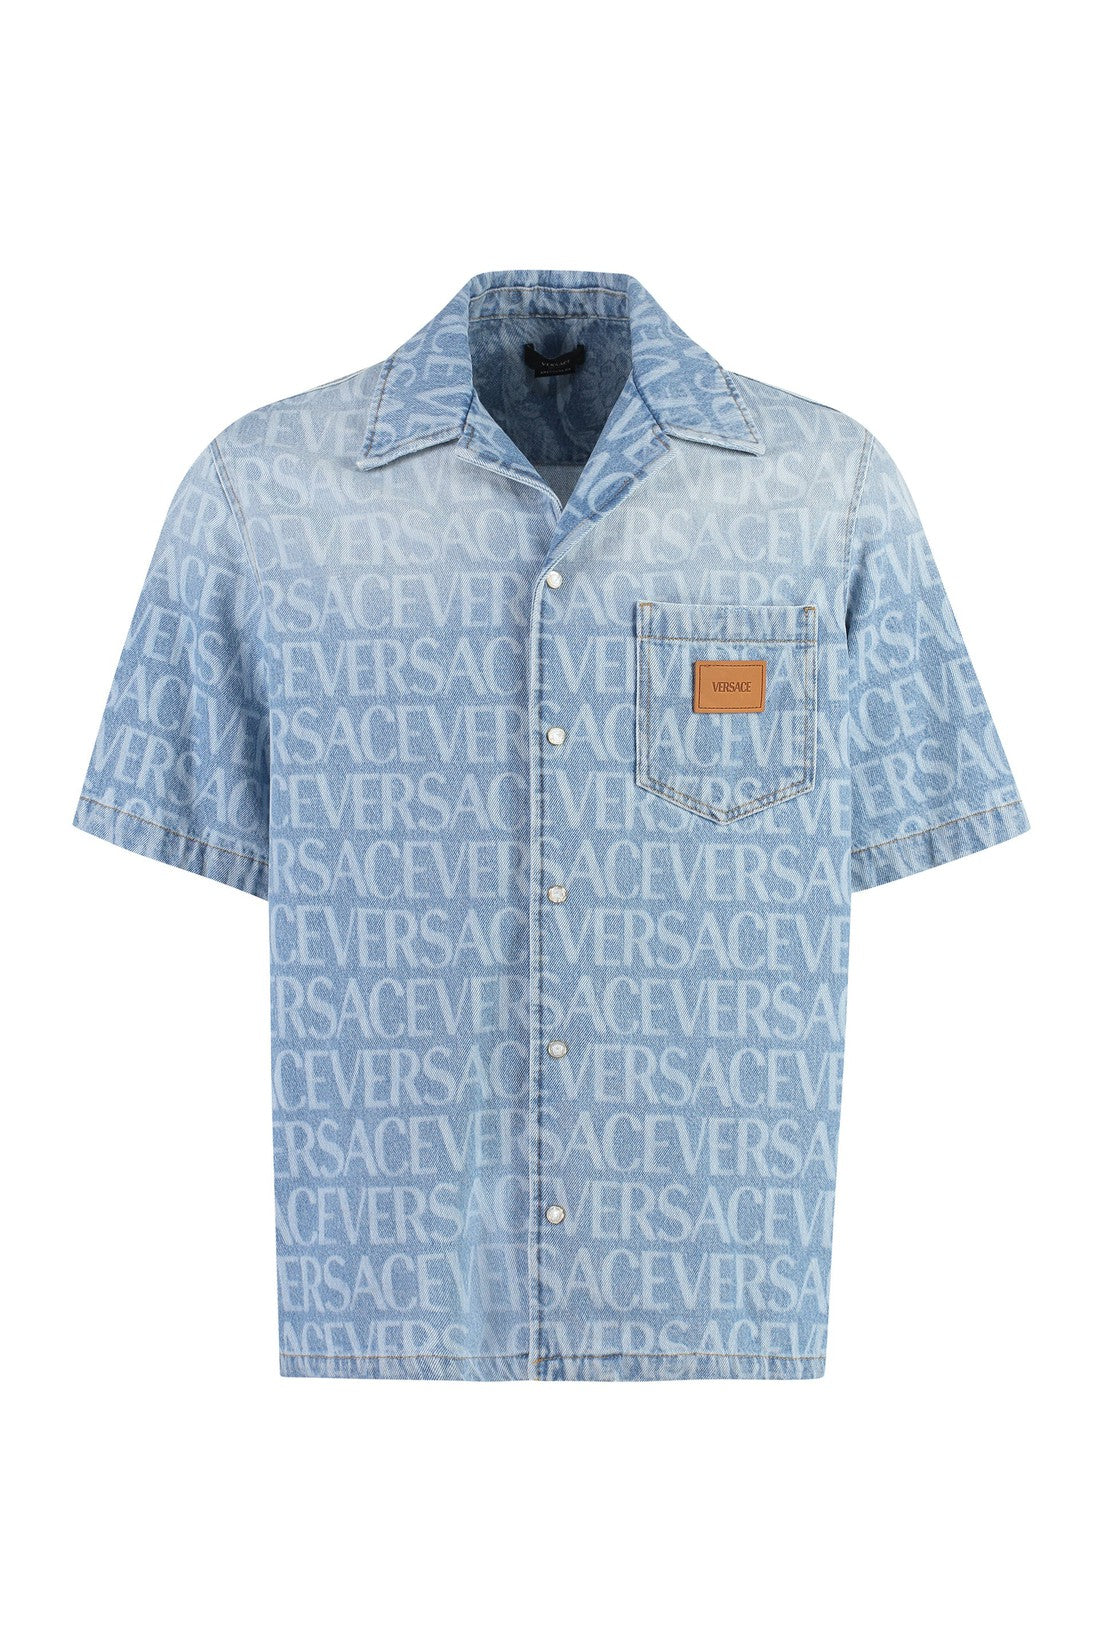 Versace-OUTLET-SALE-Logo detail denim shirt-ARCHIVIST